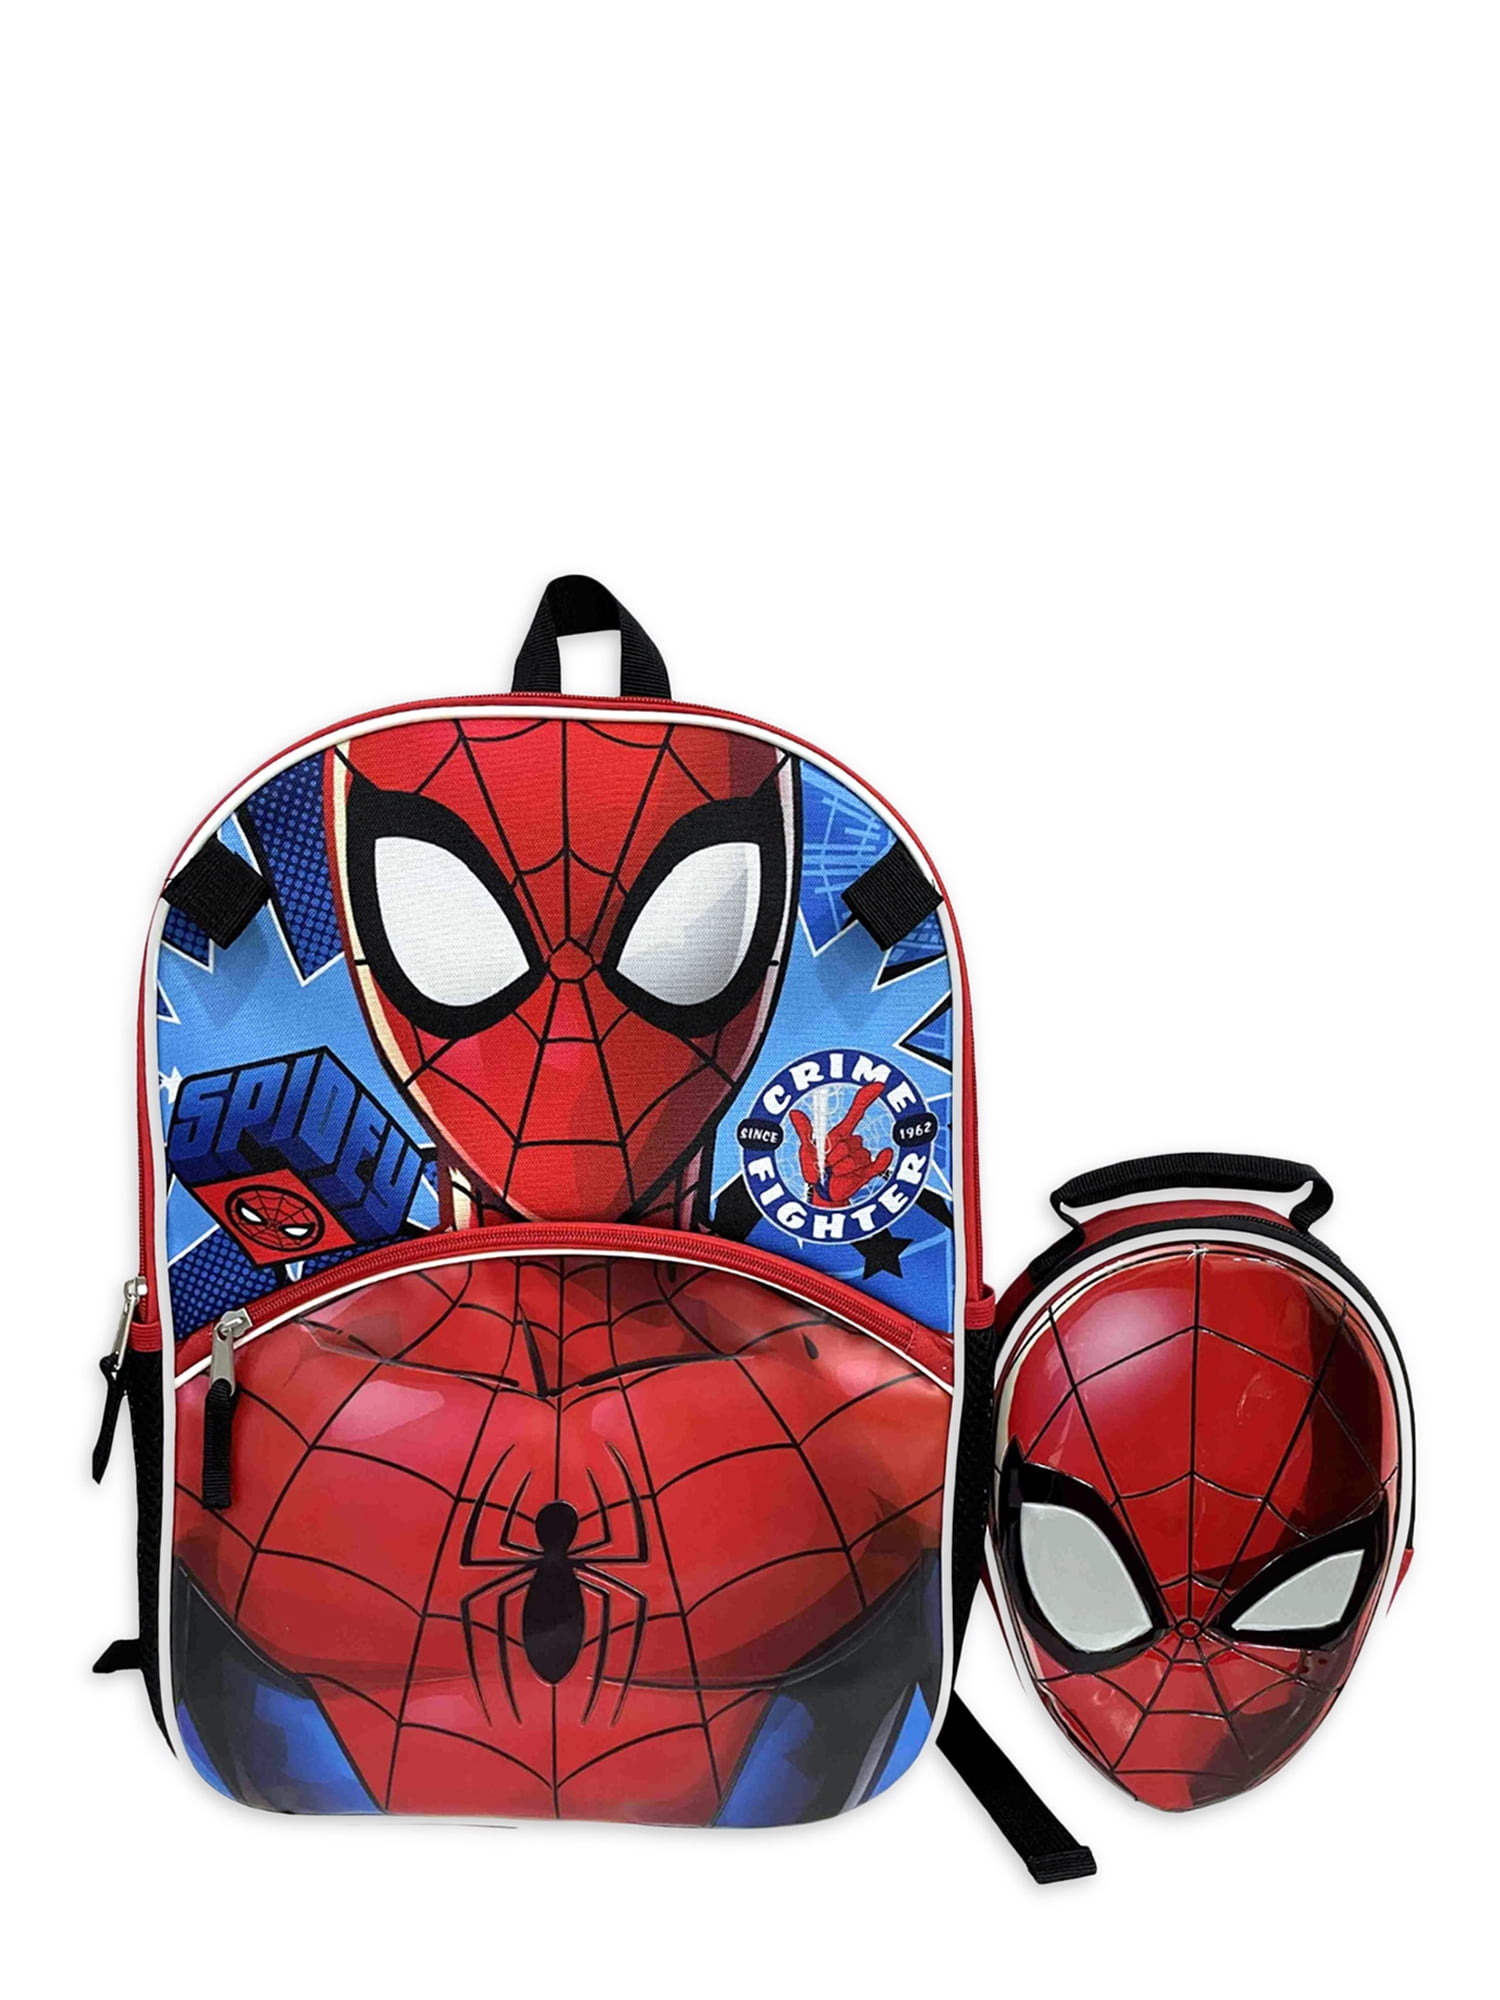 Boys Marvel Spiderman Backpack Kids Avengers School Travel Rucksack Lunch Bag 